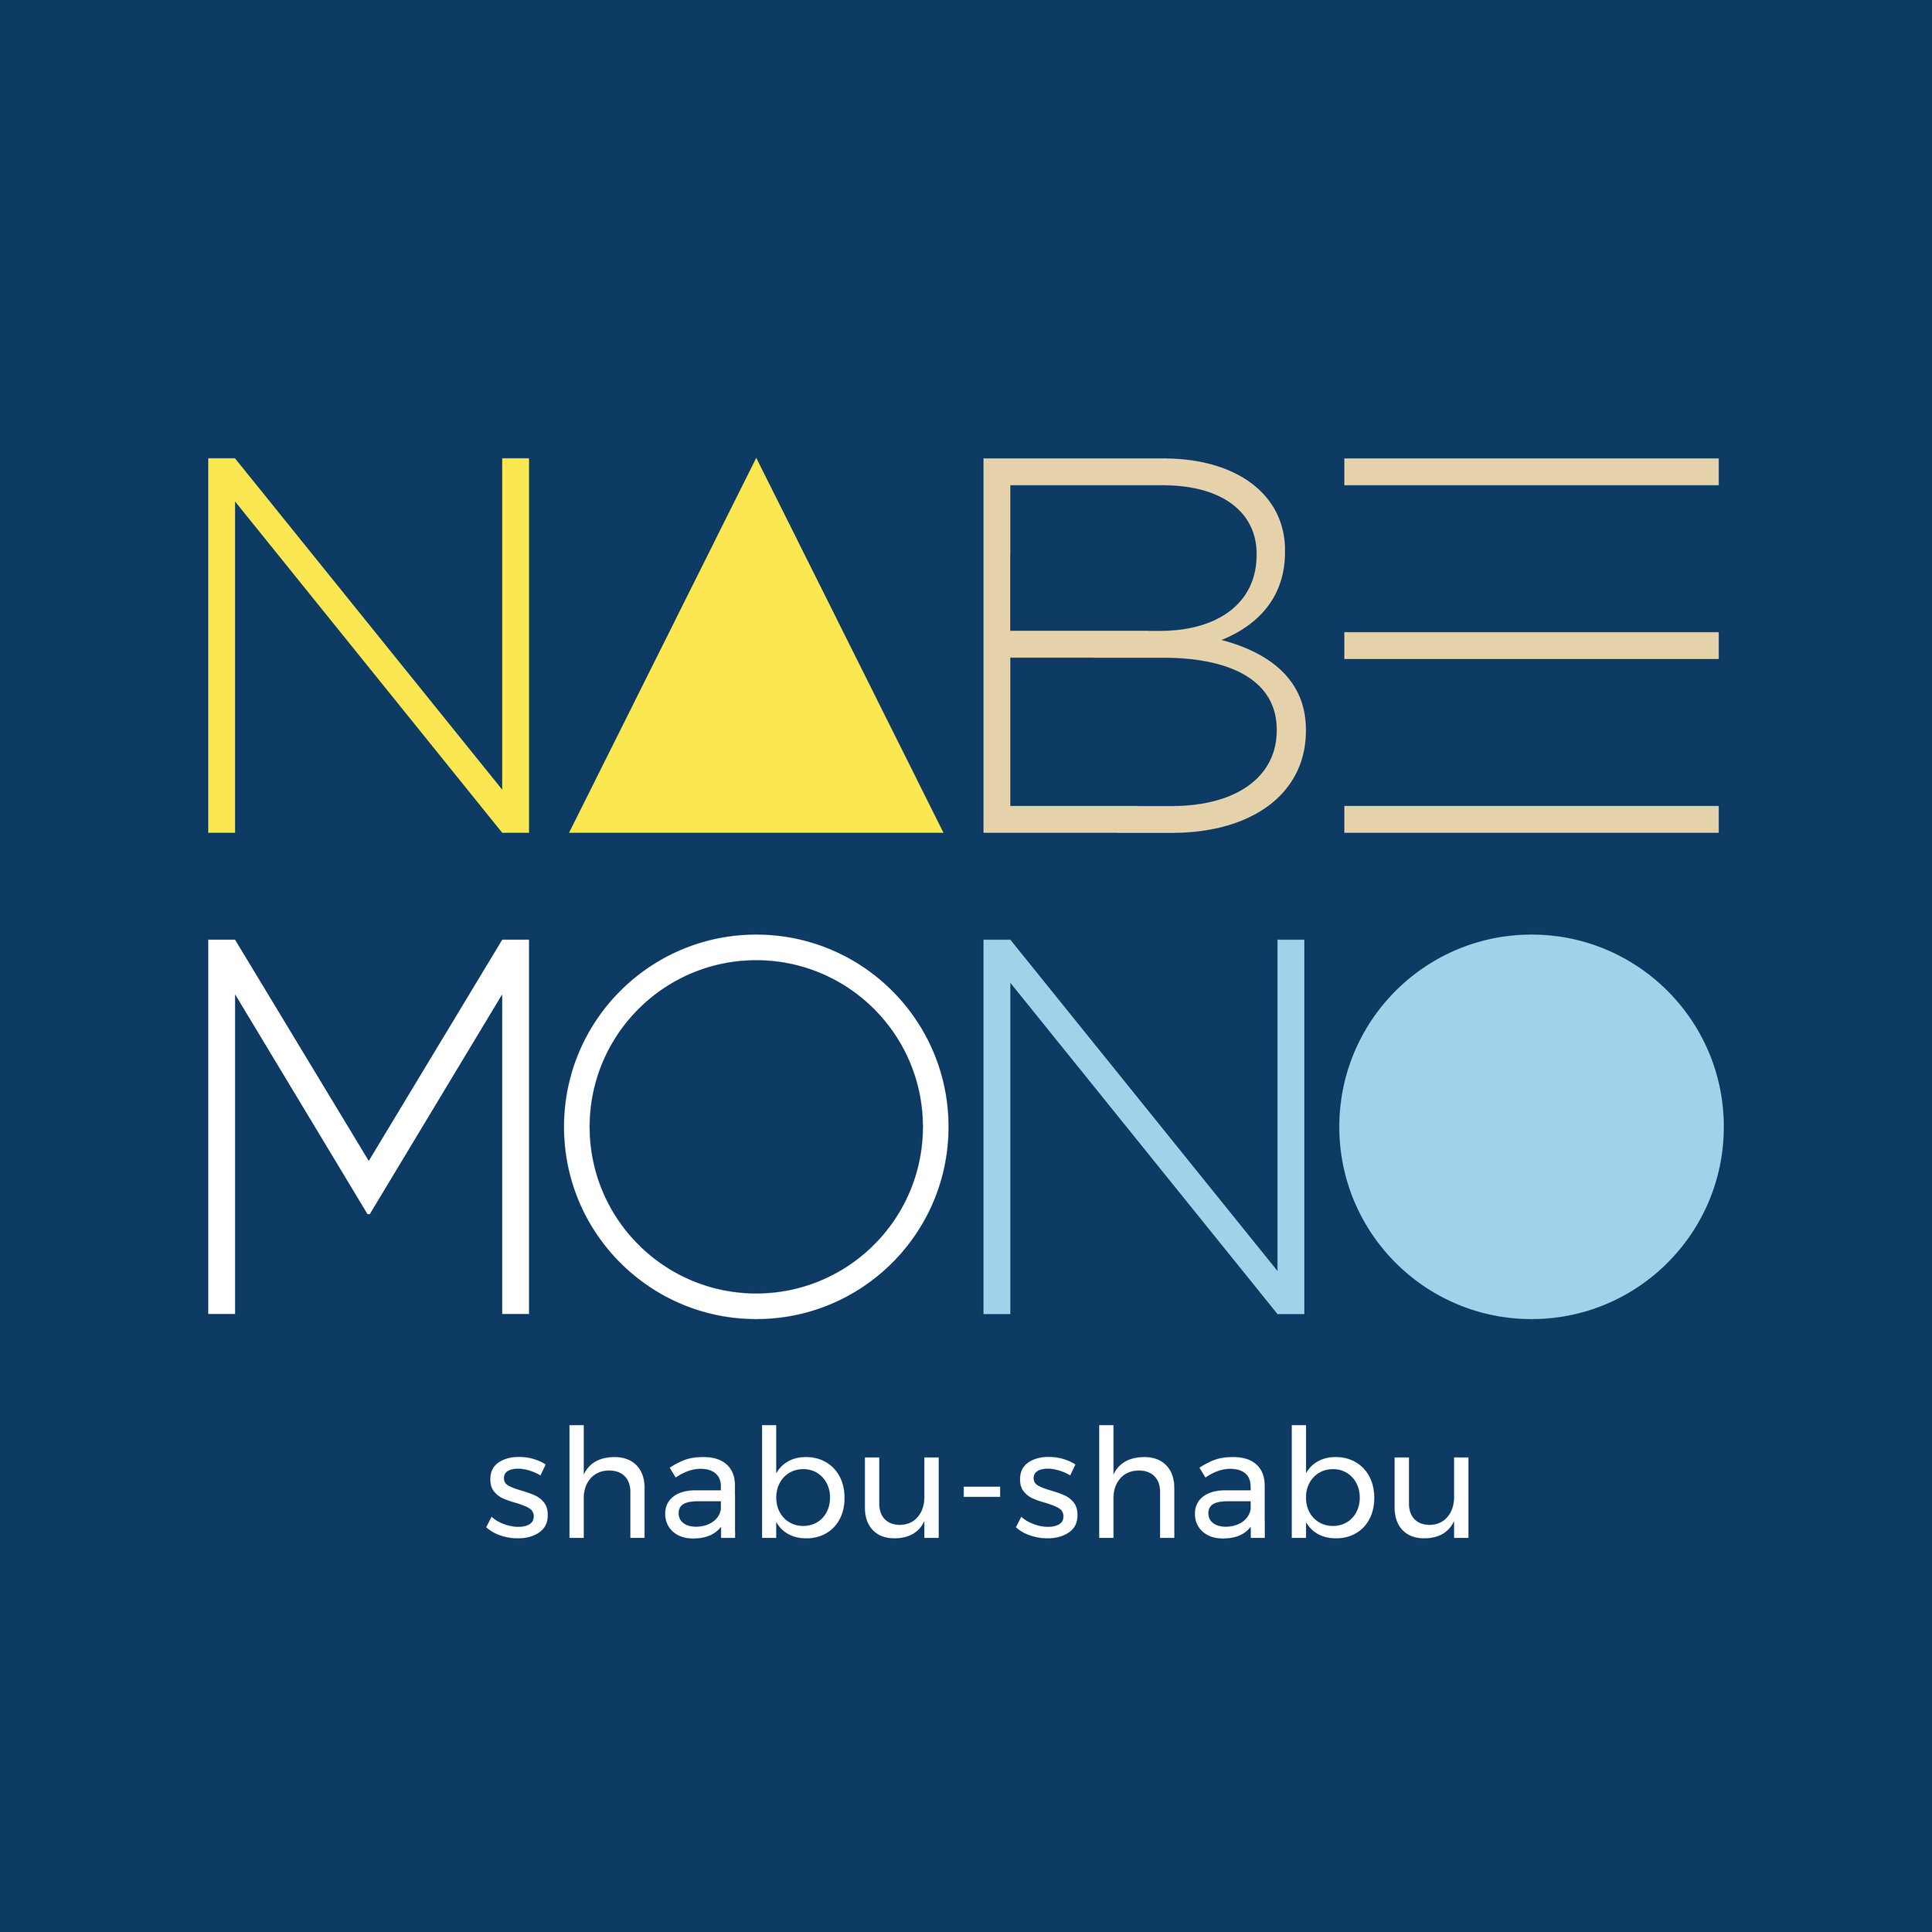 NABEMONO SHABU SHABU